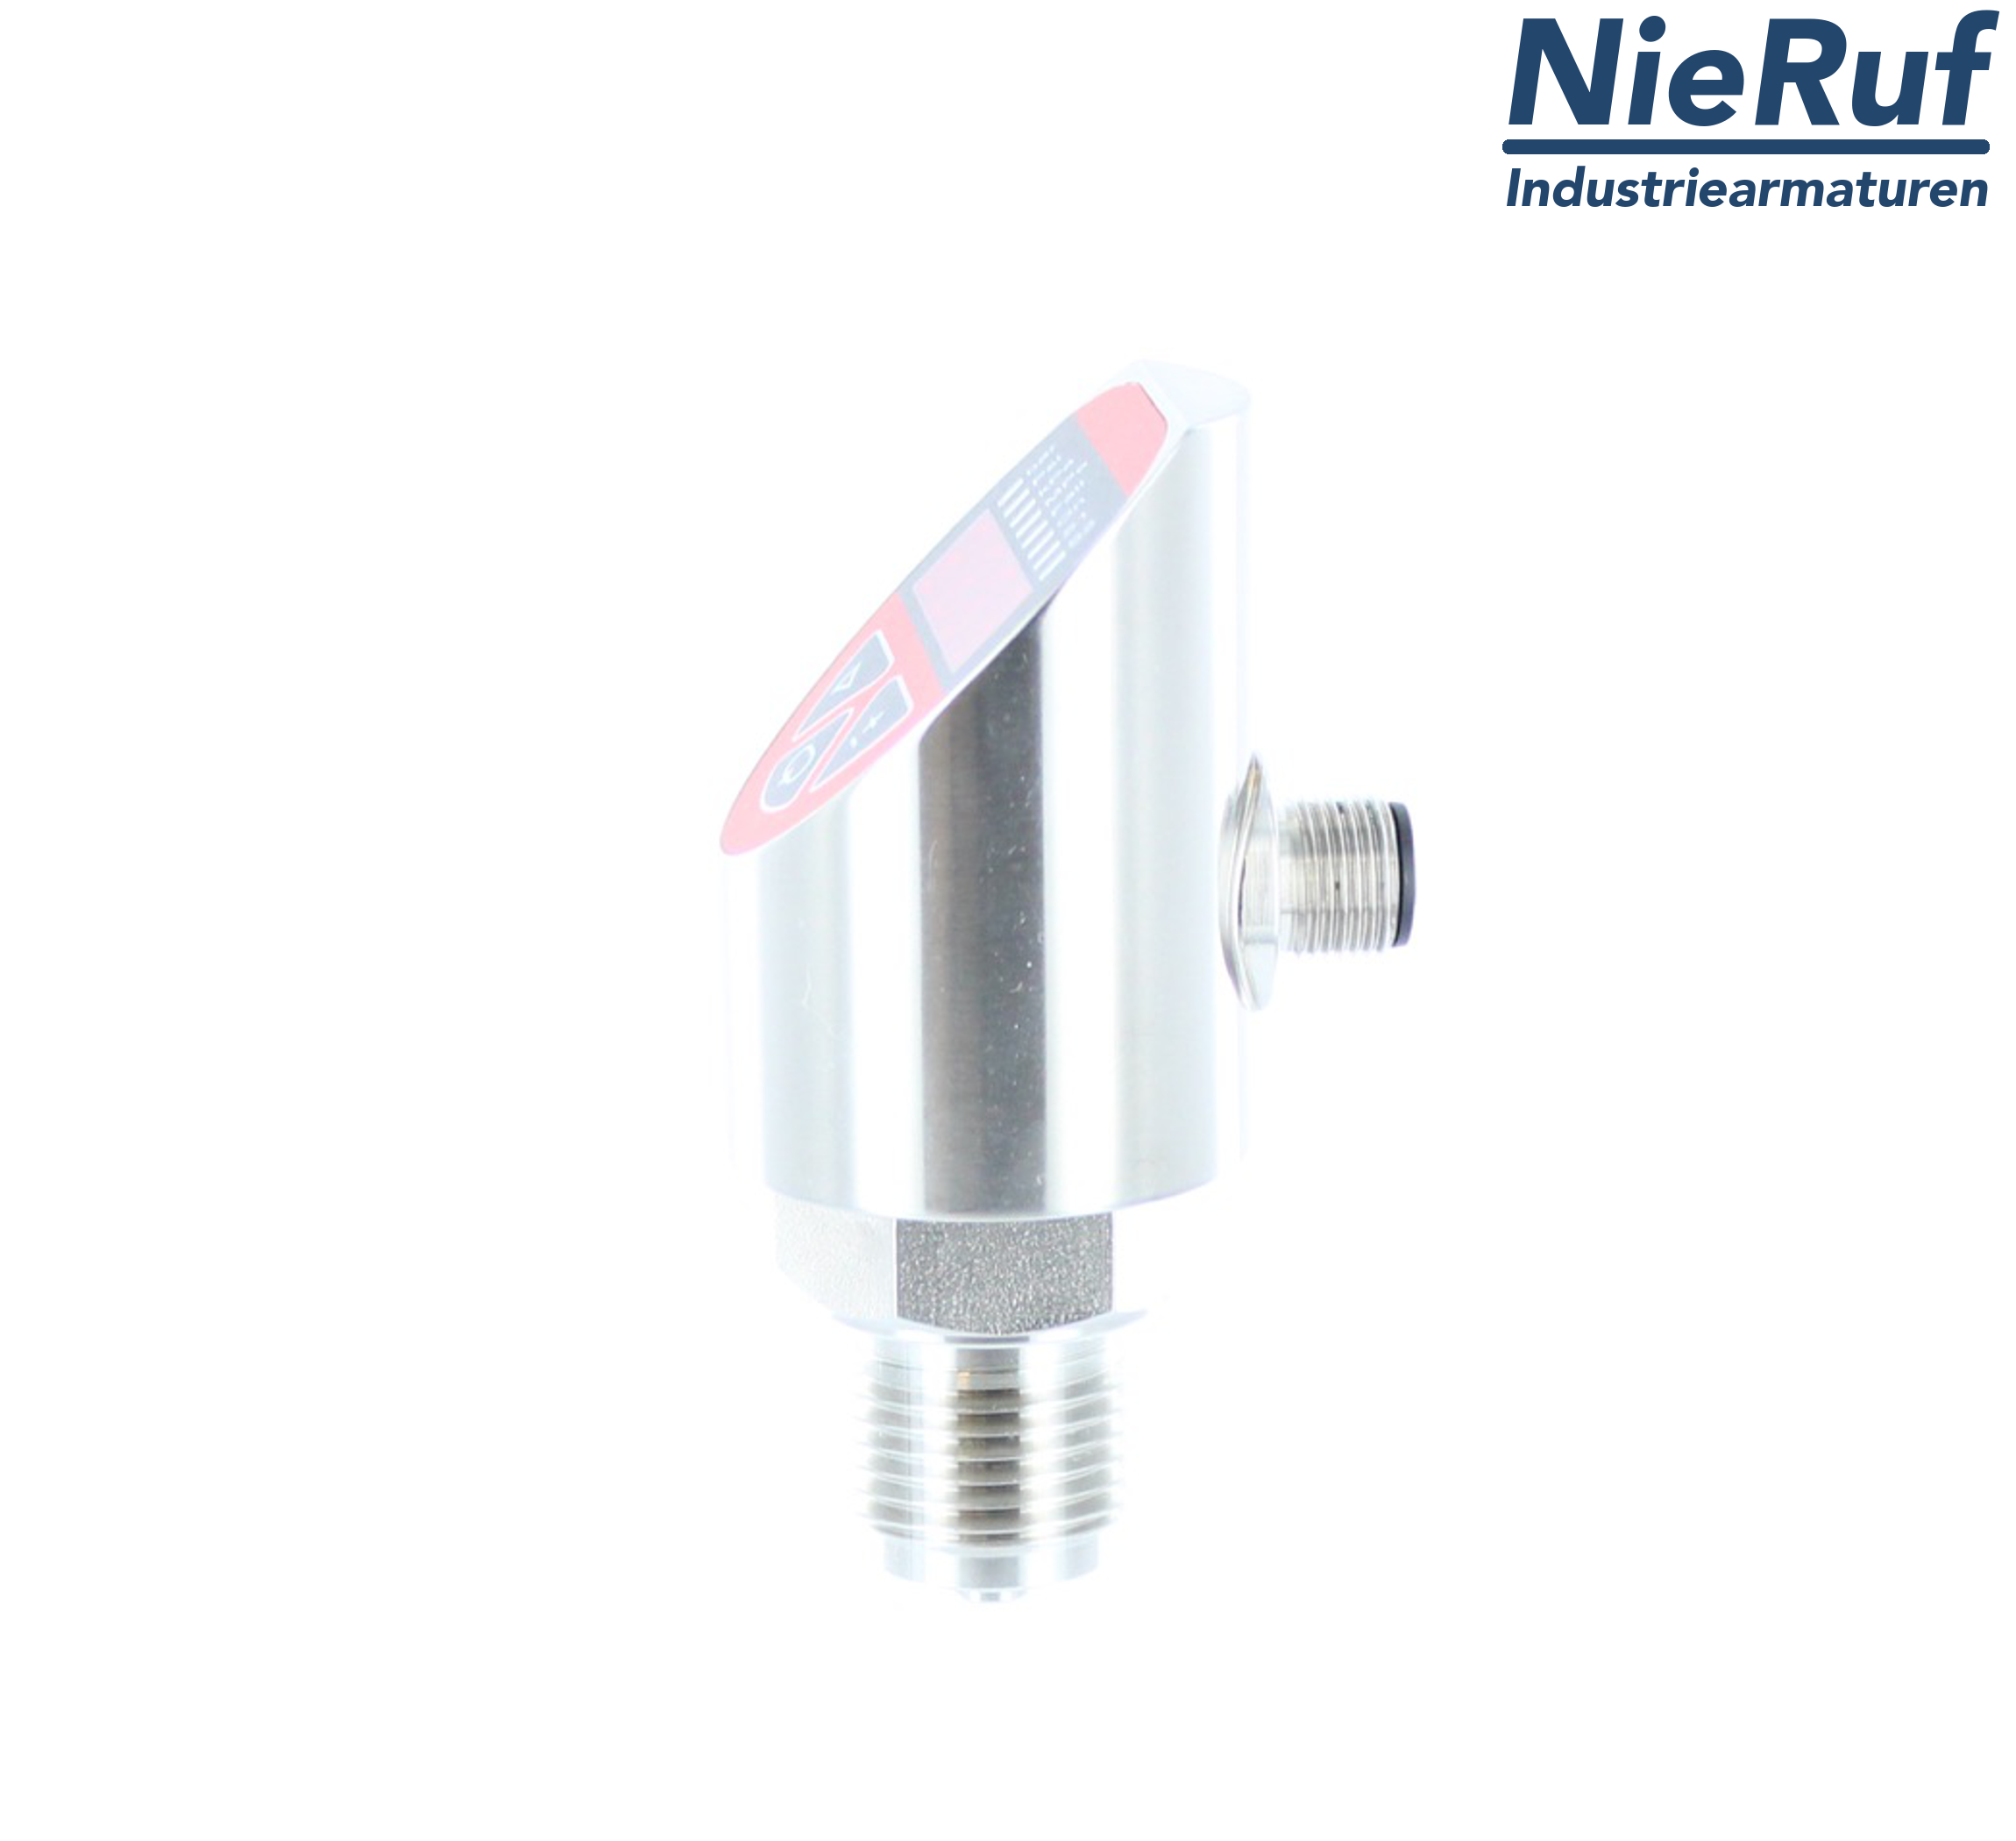 digital pressure sensor G 1/4" B 4-wire: 1xPNP, 1x4 - 20mA, Desina FPM 0,0 - 25,0 bar